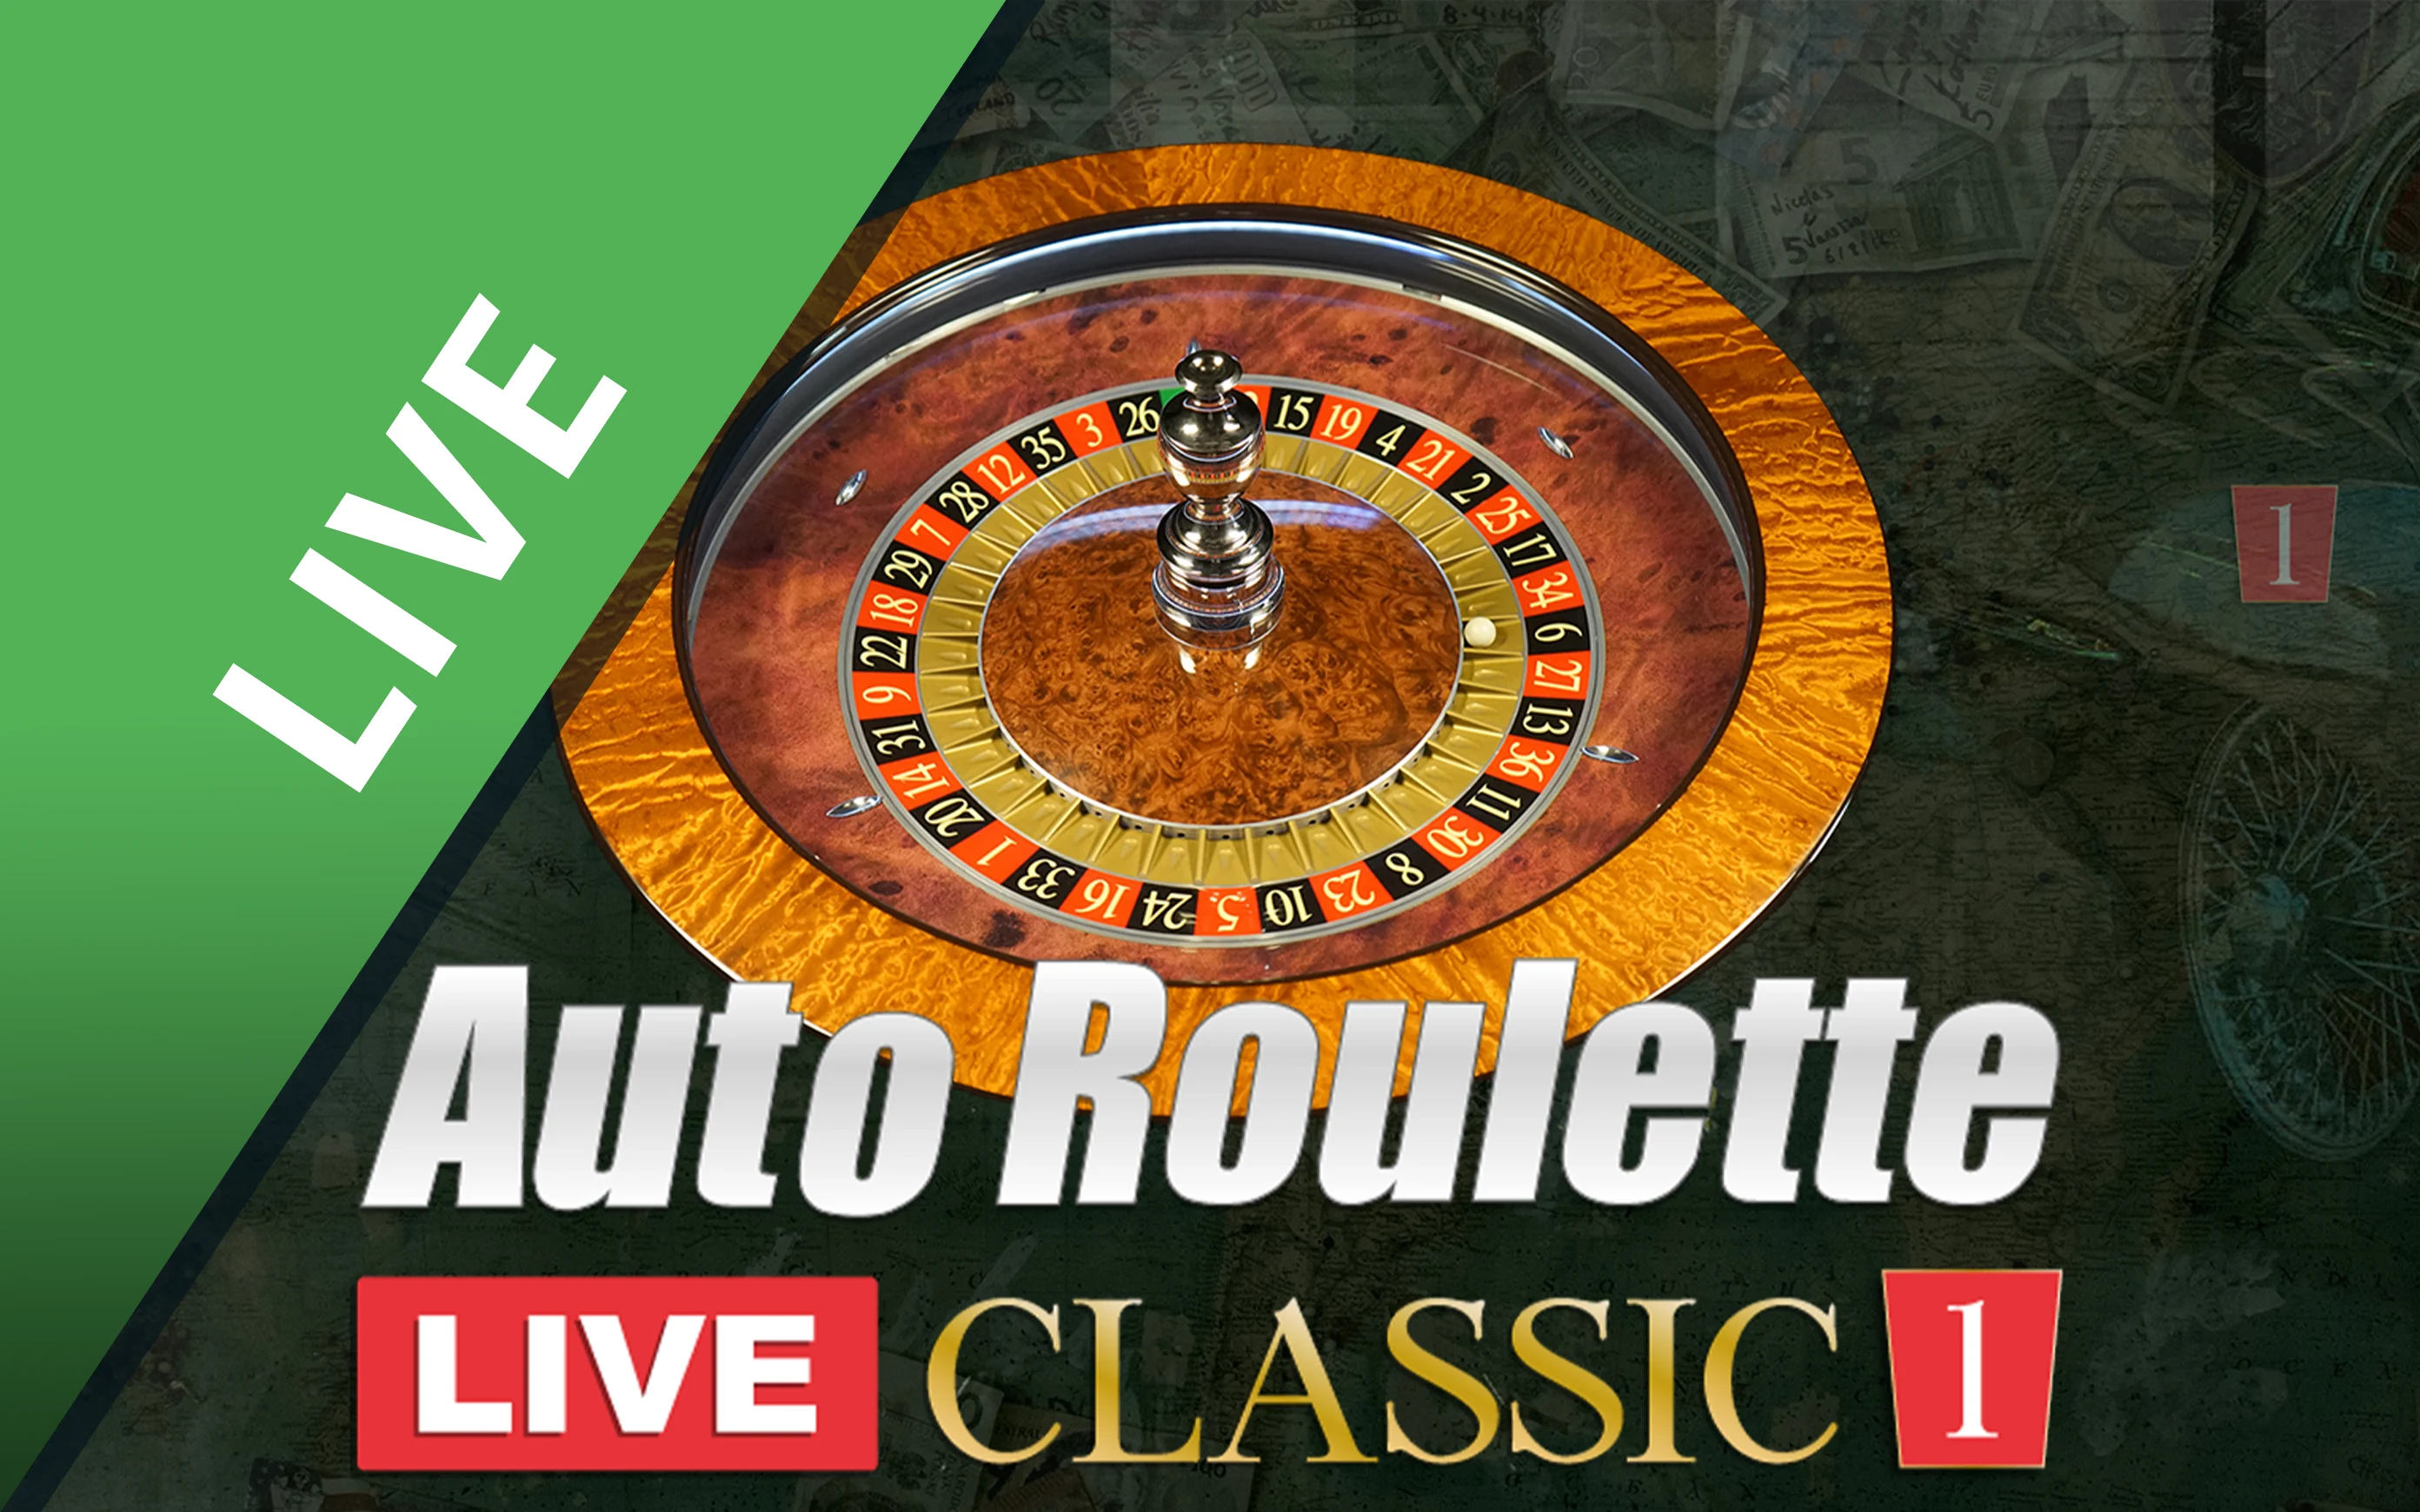 Spielen Sie Classic Roulette 1 auf Starcasino.be-Online-Casino